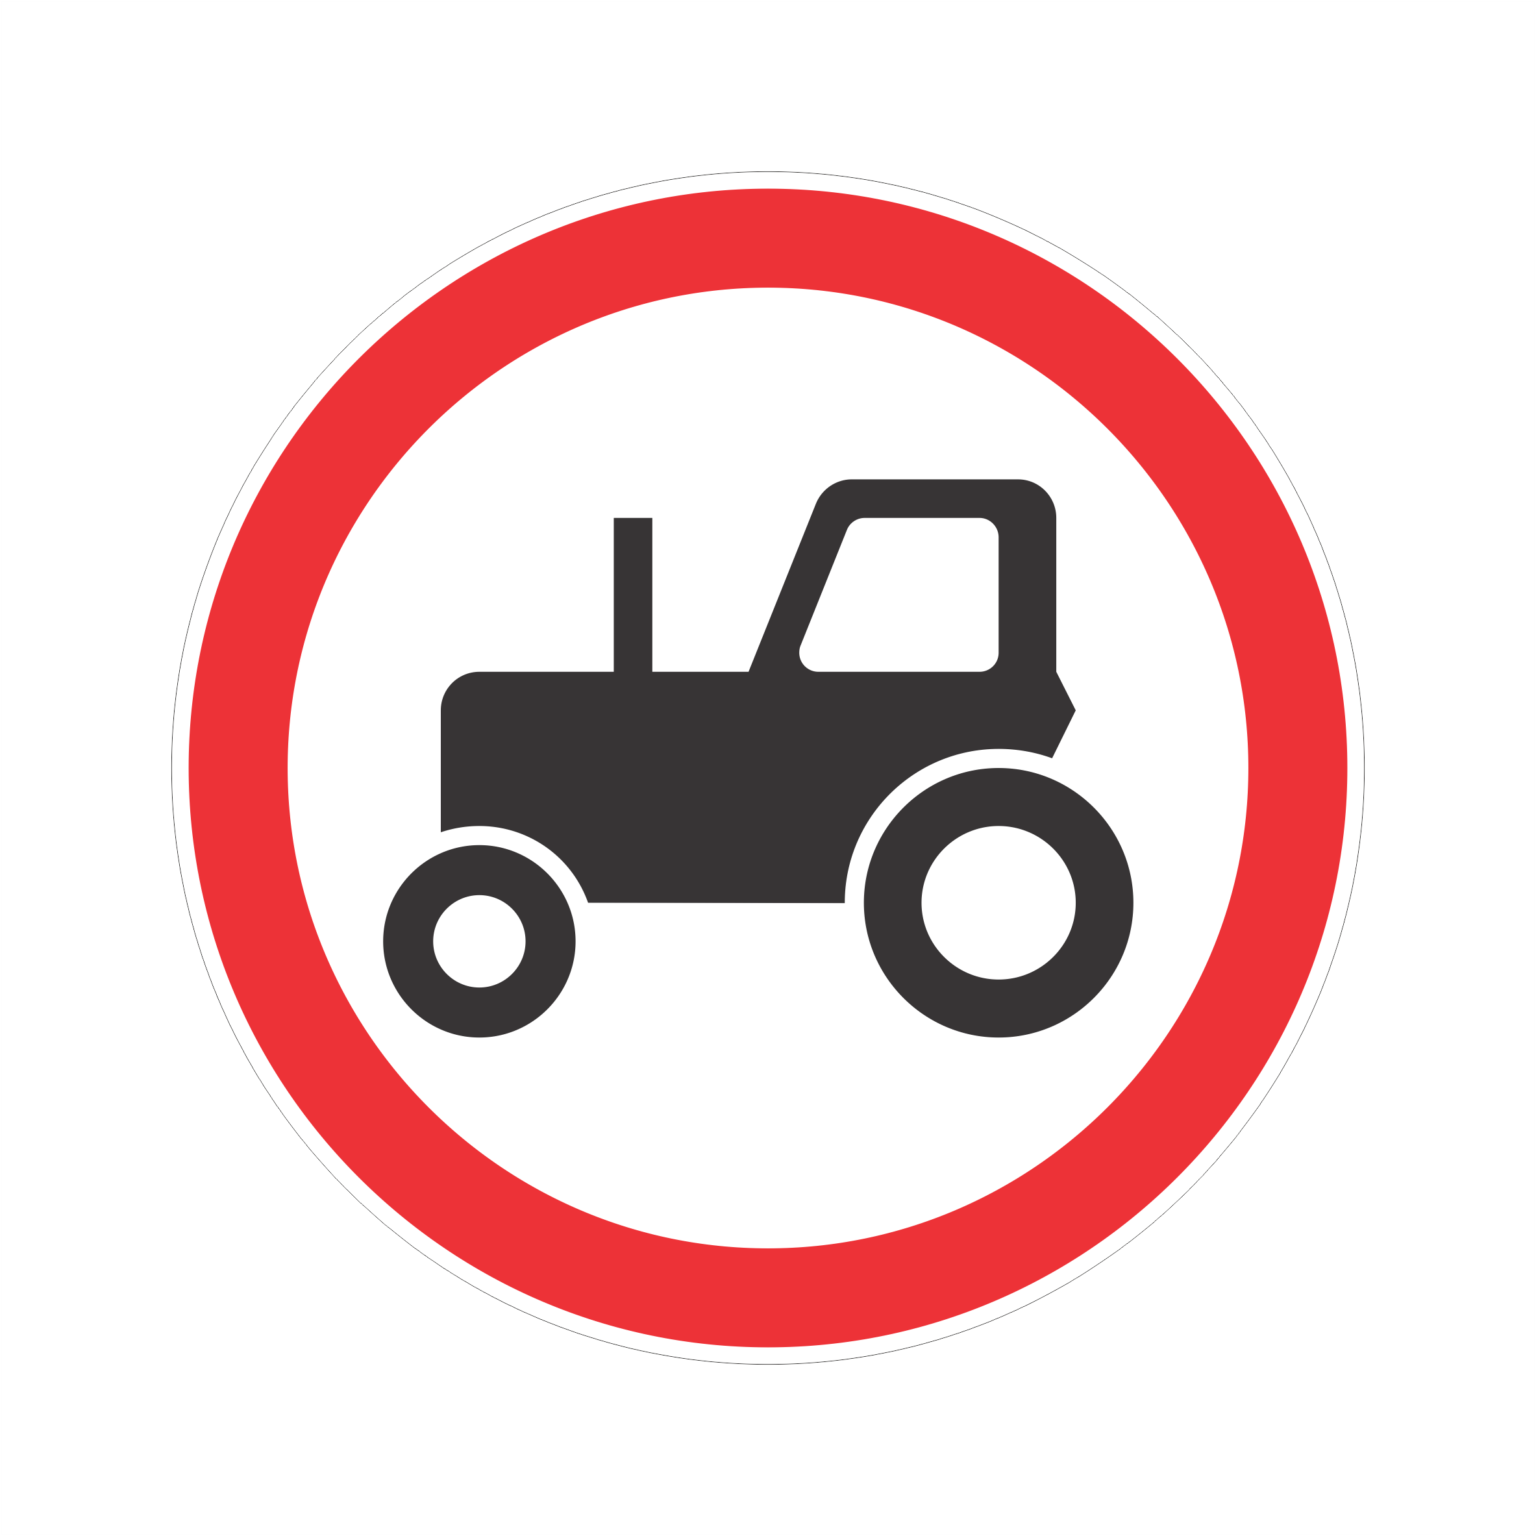 Тракторное движение. Знак движение тракторов запрещено. 3.6. «Движение тракторов запрещено». Запрет трактора знак. Знаки ПДД трактор.